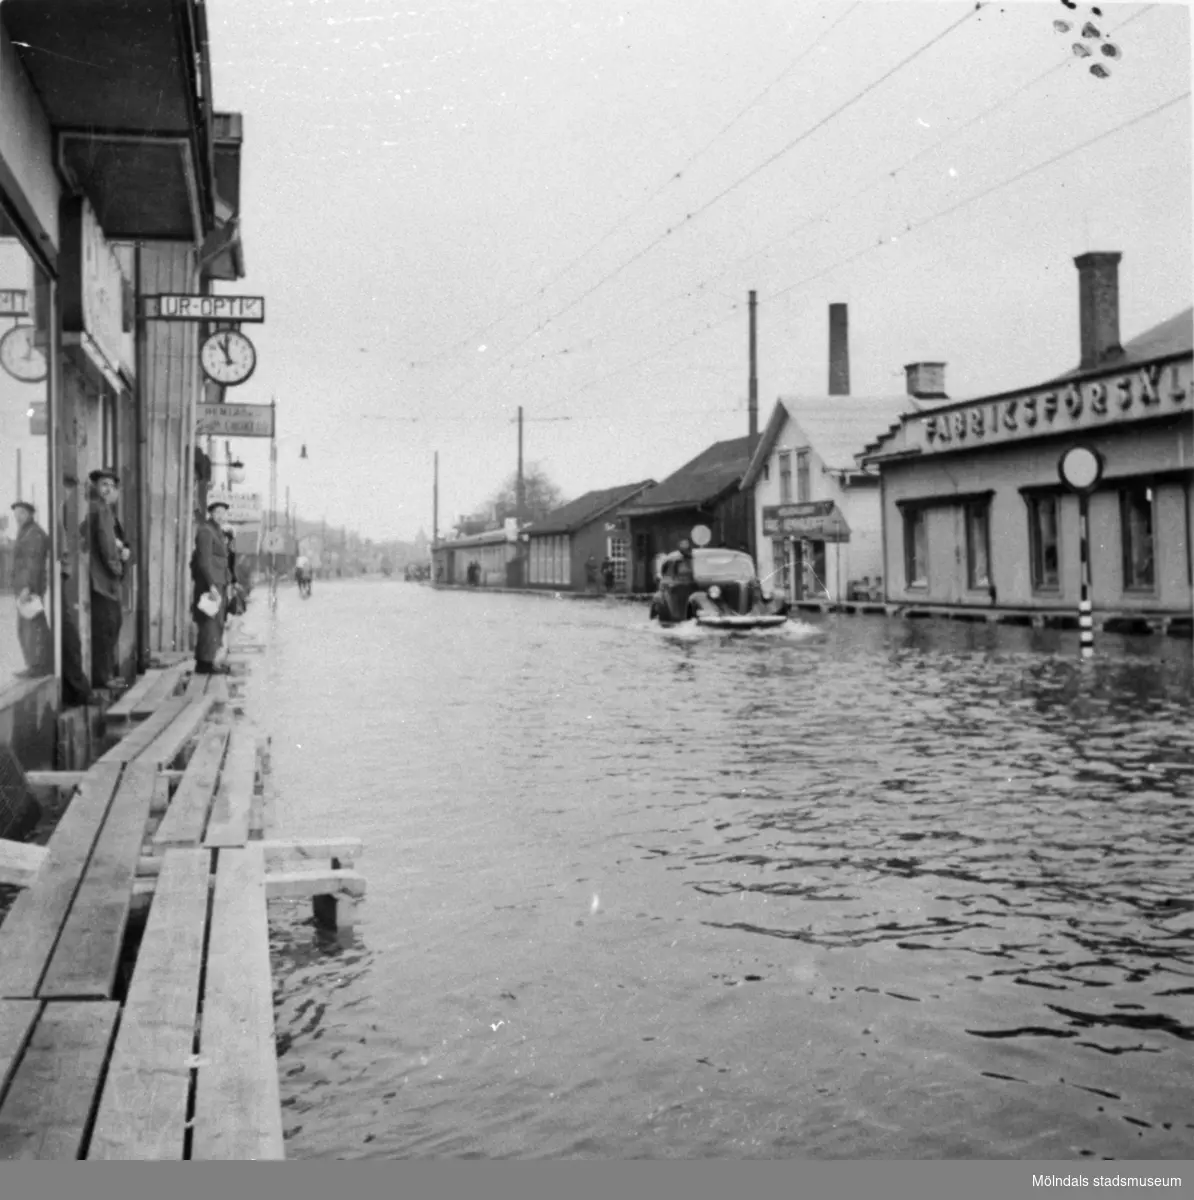 Kl 11.00 på förmiddagen. Översvämning på Göteborgsvägen vid biografen Grand i Mölndalsbro, omkring 1940.